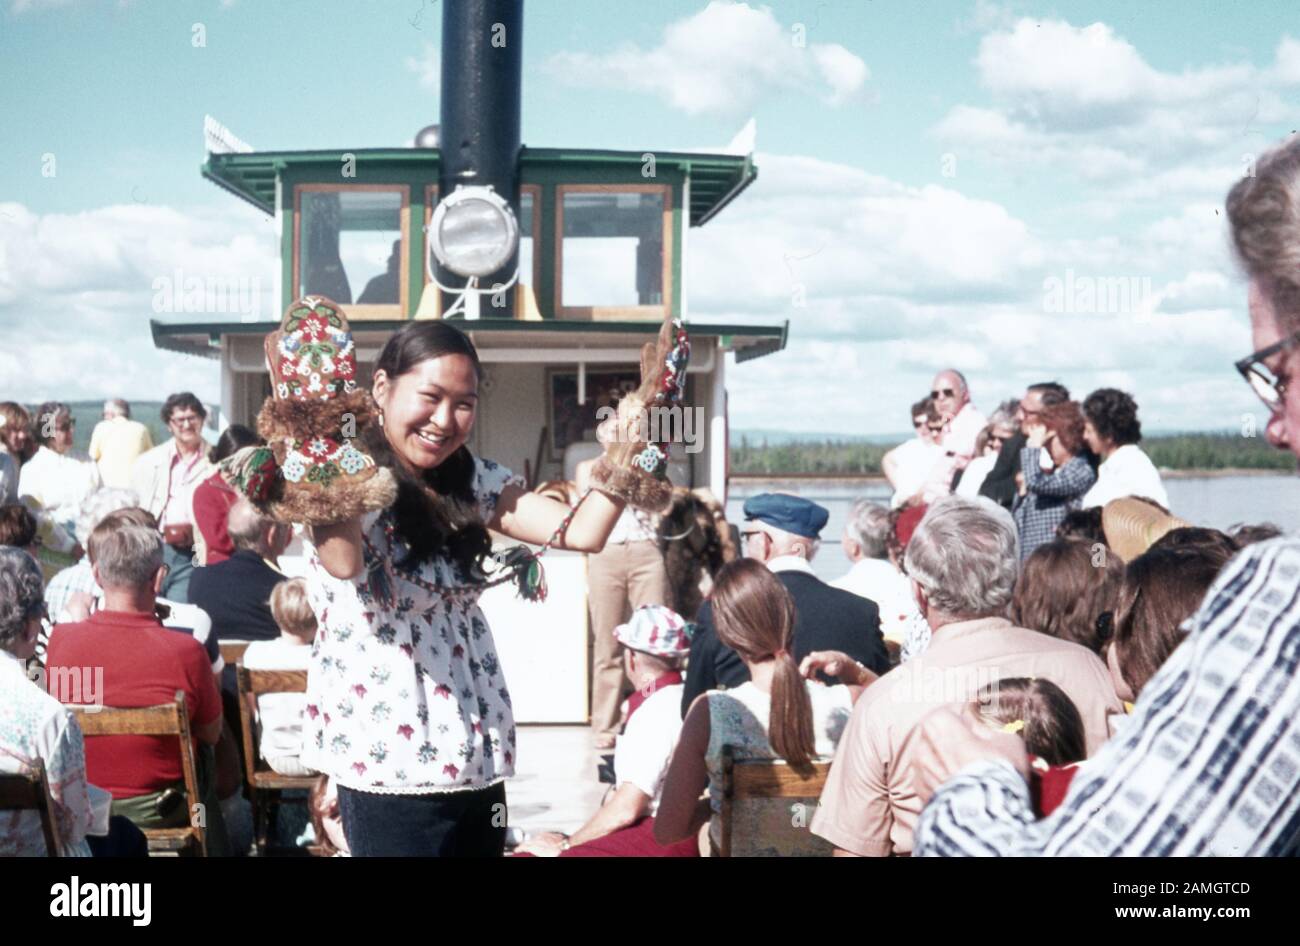 Photographie vernaculaire prise sur un film analogique de 35 mm transparent, qui est censé représenter les personnes qui se rassemblent sur un bateau pendant la journée, 1965. Les principaux sujets/objets détectés incluent Les Personnes. () Banque D'Images